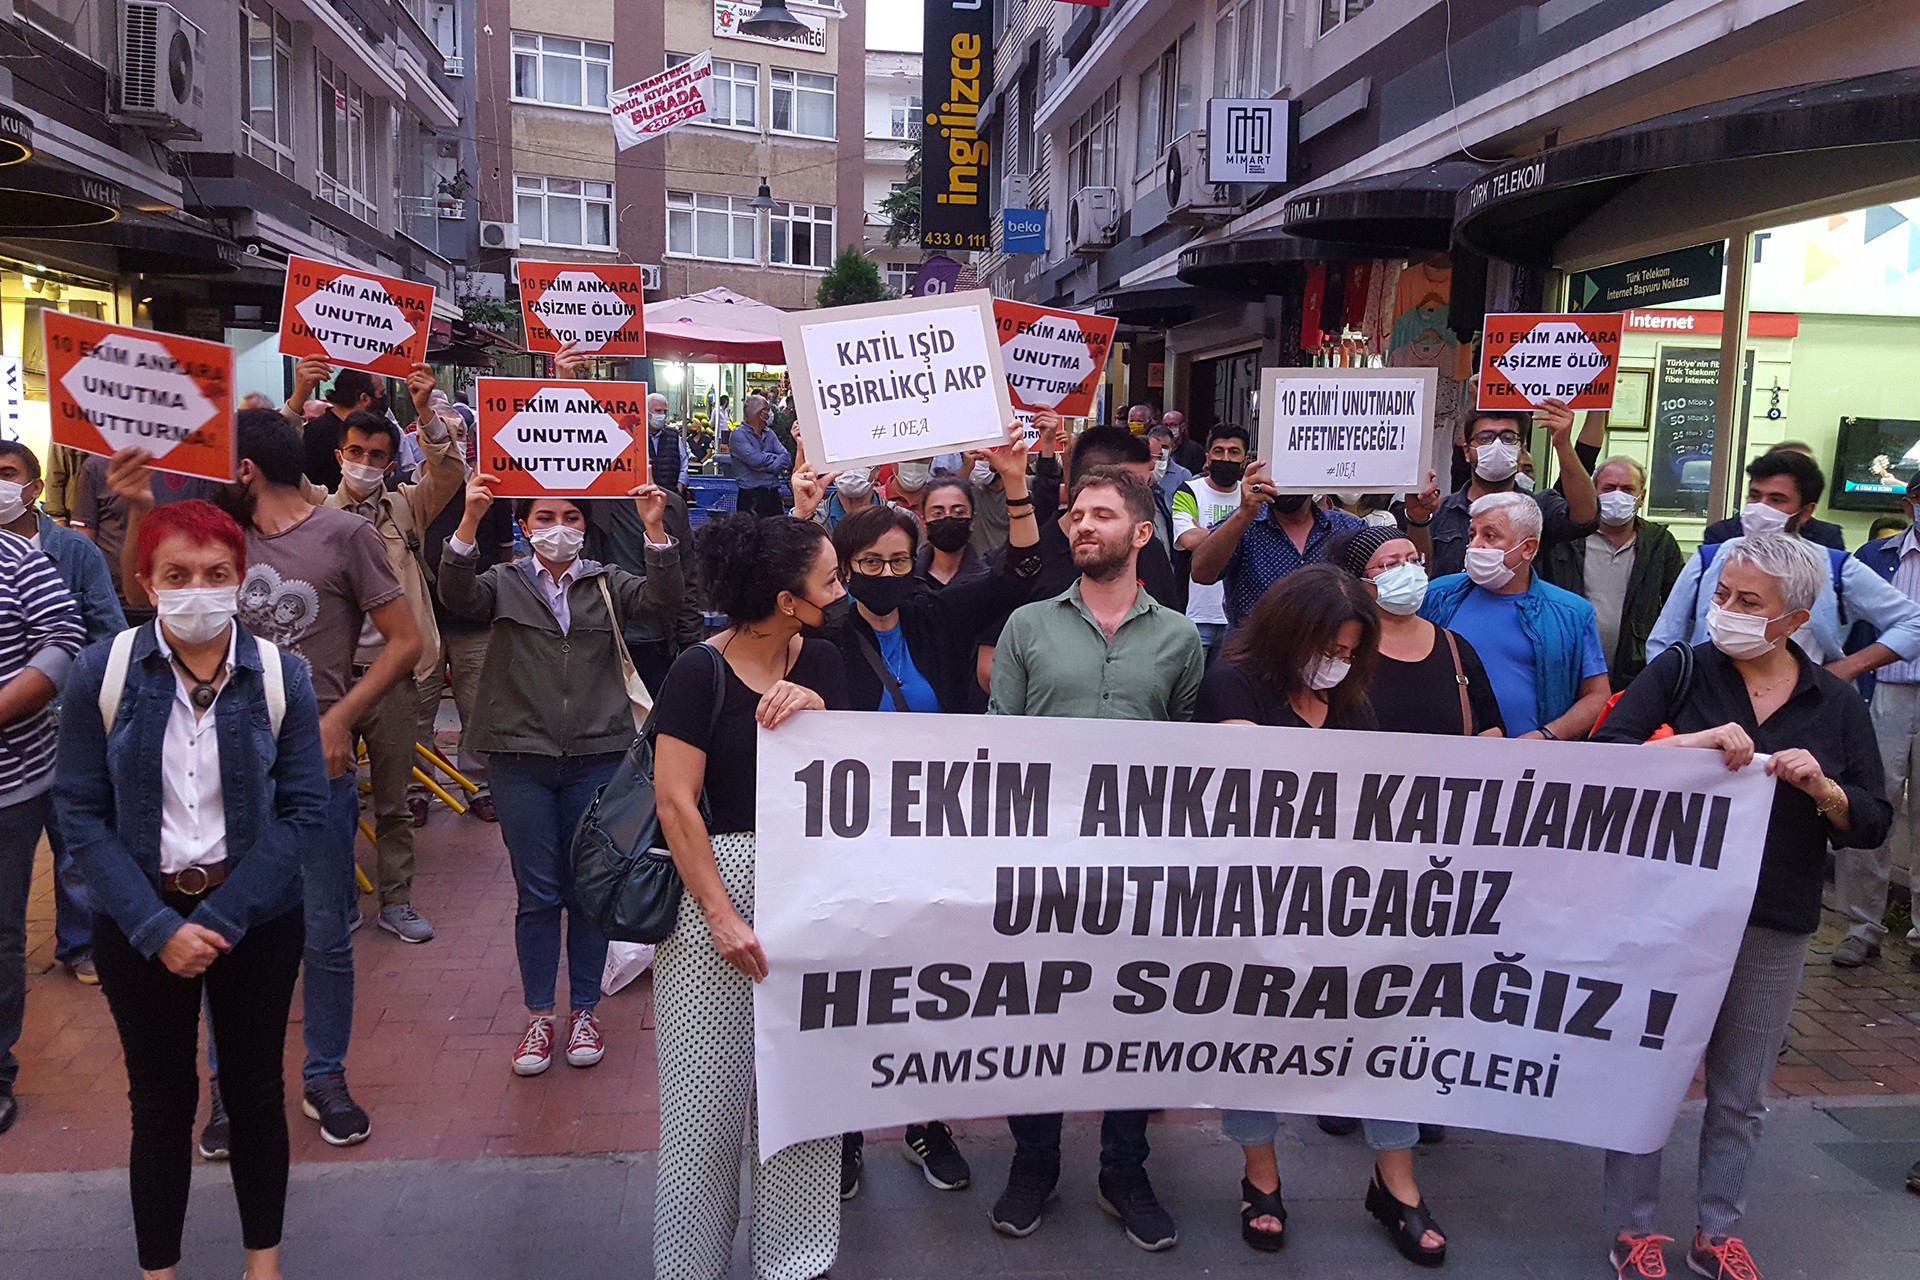 10 Ekim Ankara Katliamı'nda yaşamını yitirenler, katliamın 5'inci yıl dönümünde Samsun'da düzenlenen etkinlikte anıldı.